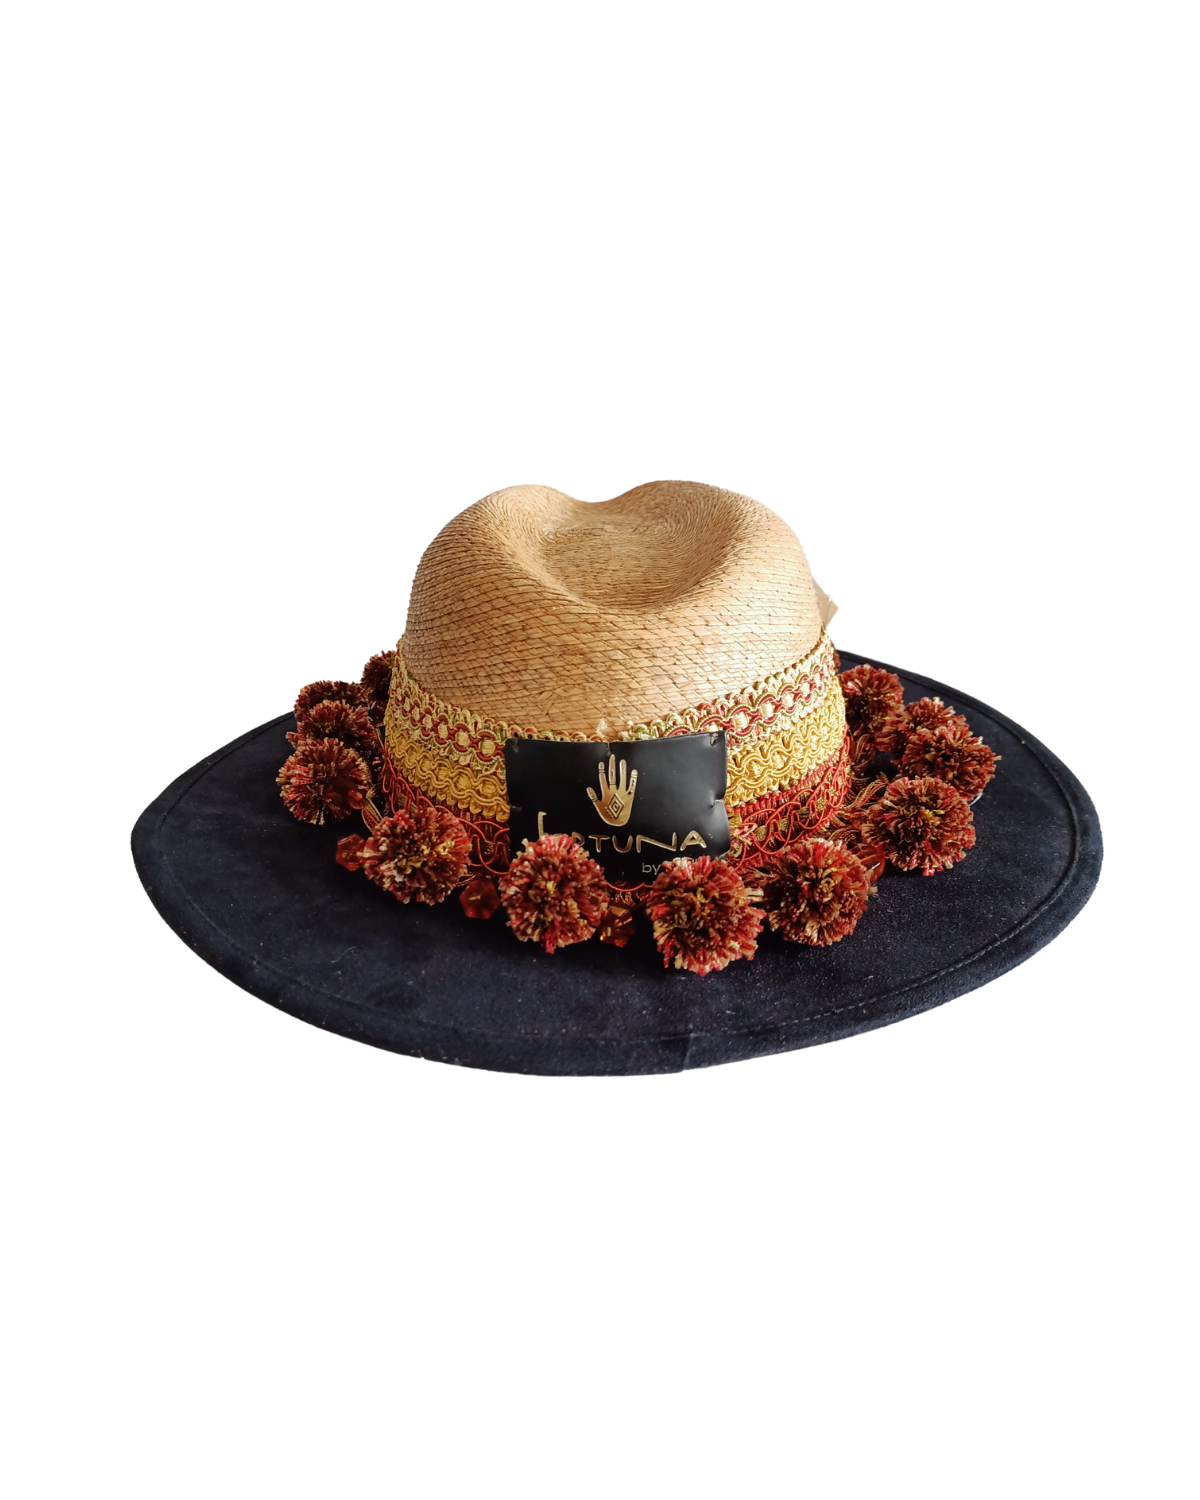 Sombrero fortuna black tipo country color azul marino/Palma pompones rojos